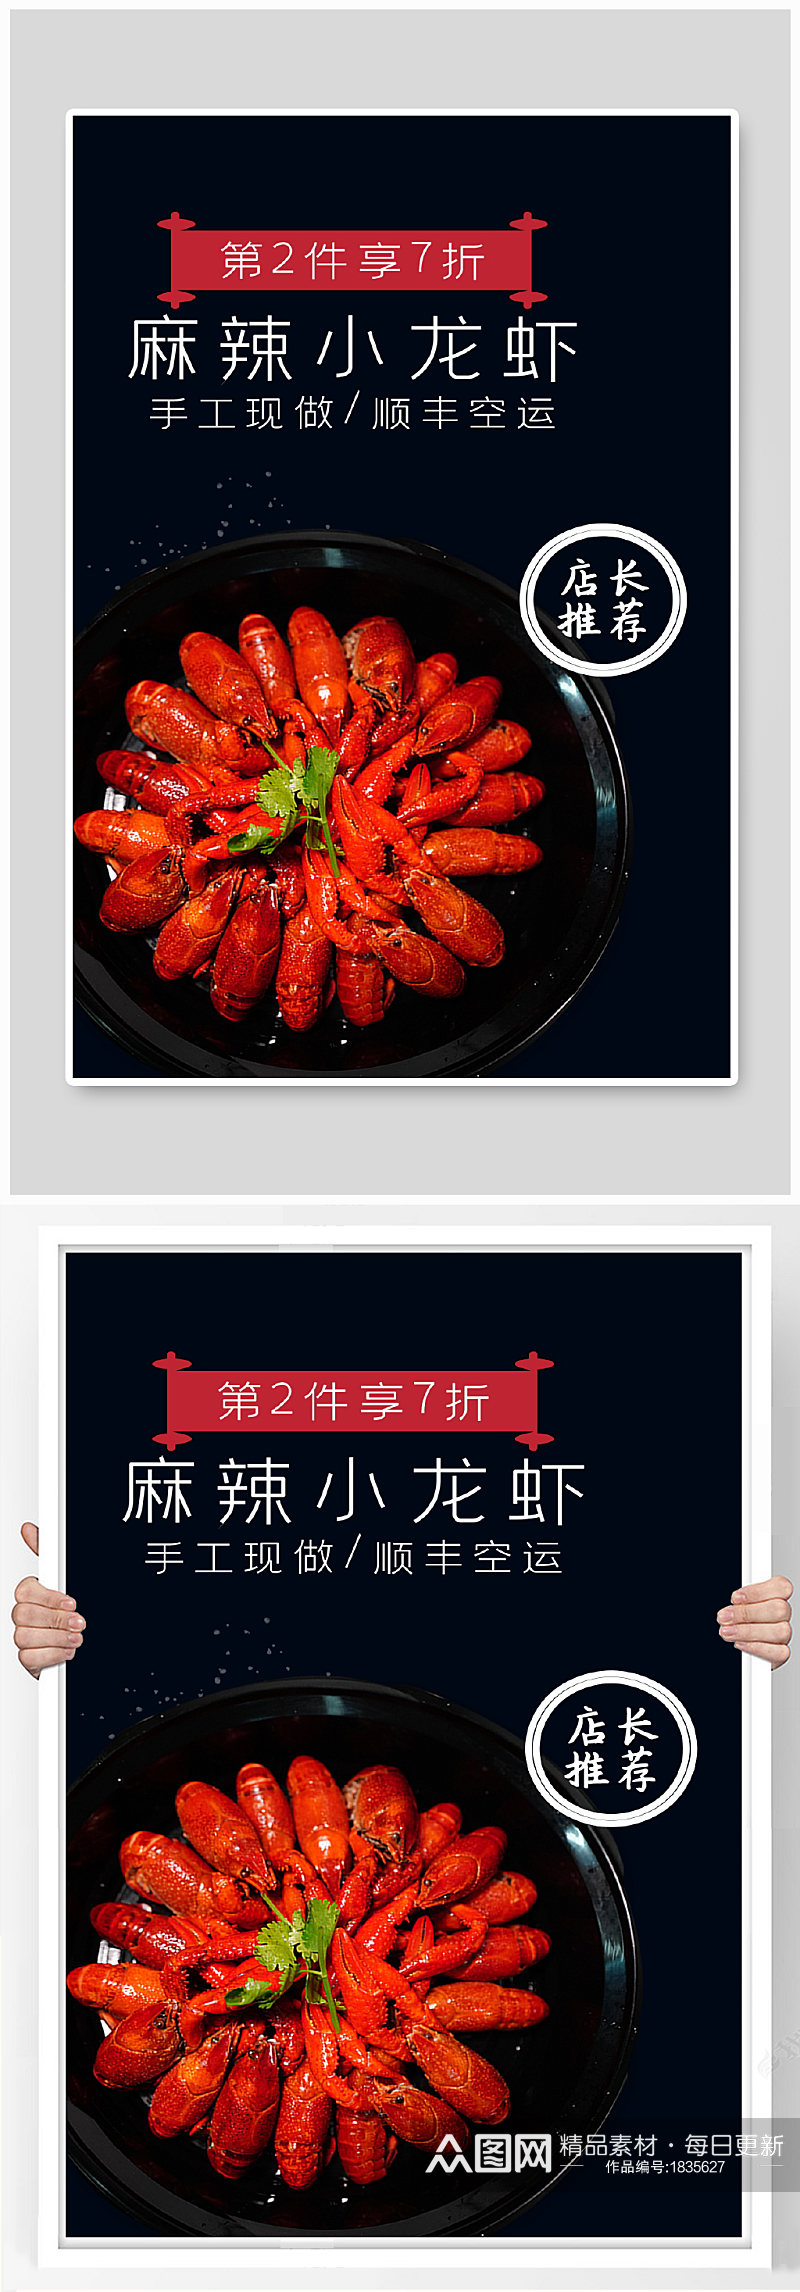 吃货节深色海鲜食品小龙虾特卖促销海报钻展素材